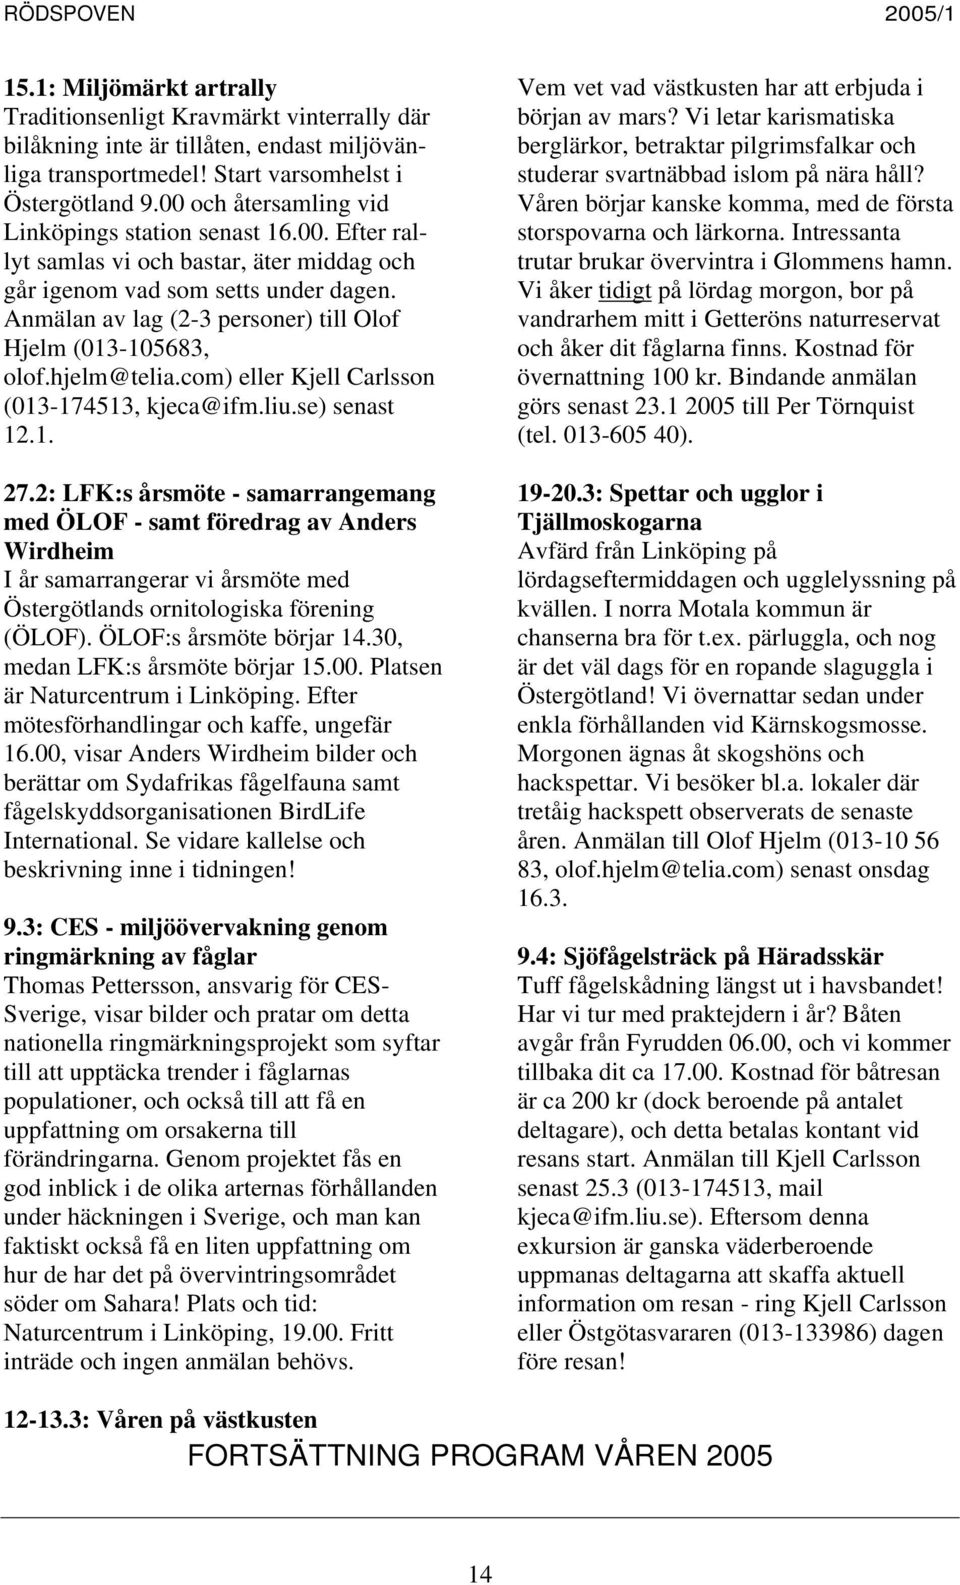 Anmälan av lag (2-3 personer) till Olof Hjelm (013-105683, olof.hjelm@telia.com) eller Kjell Carlsson (013-174513, kjeca@ifm.liu.se) senast 12.1. 27.